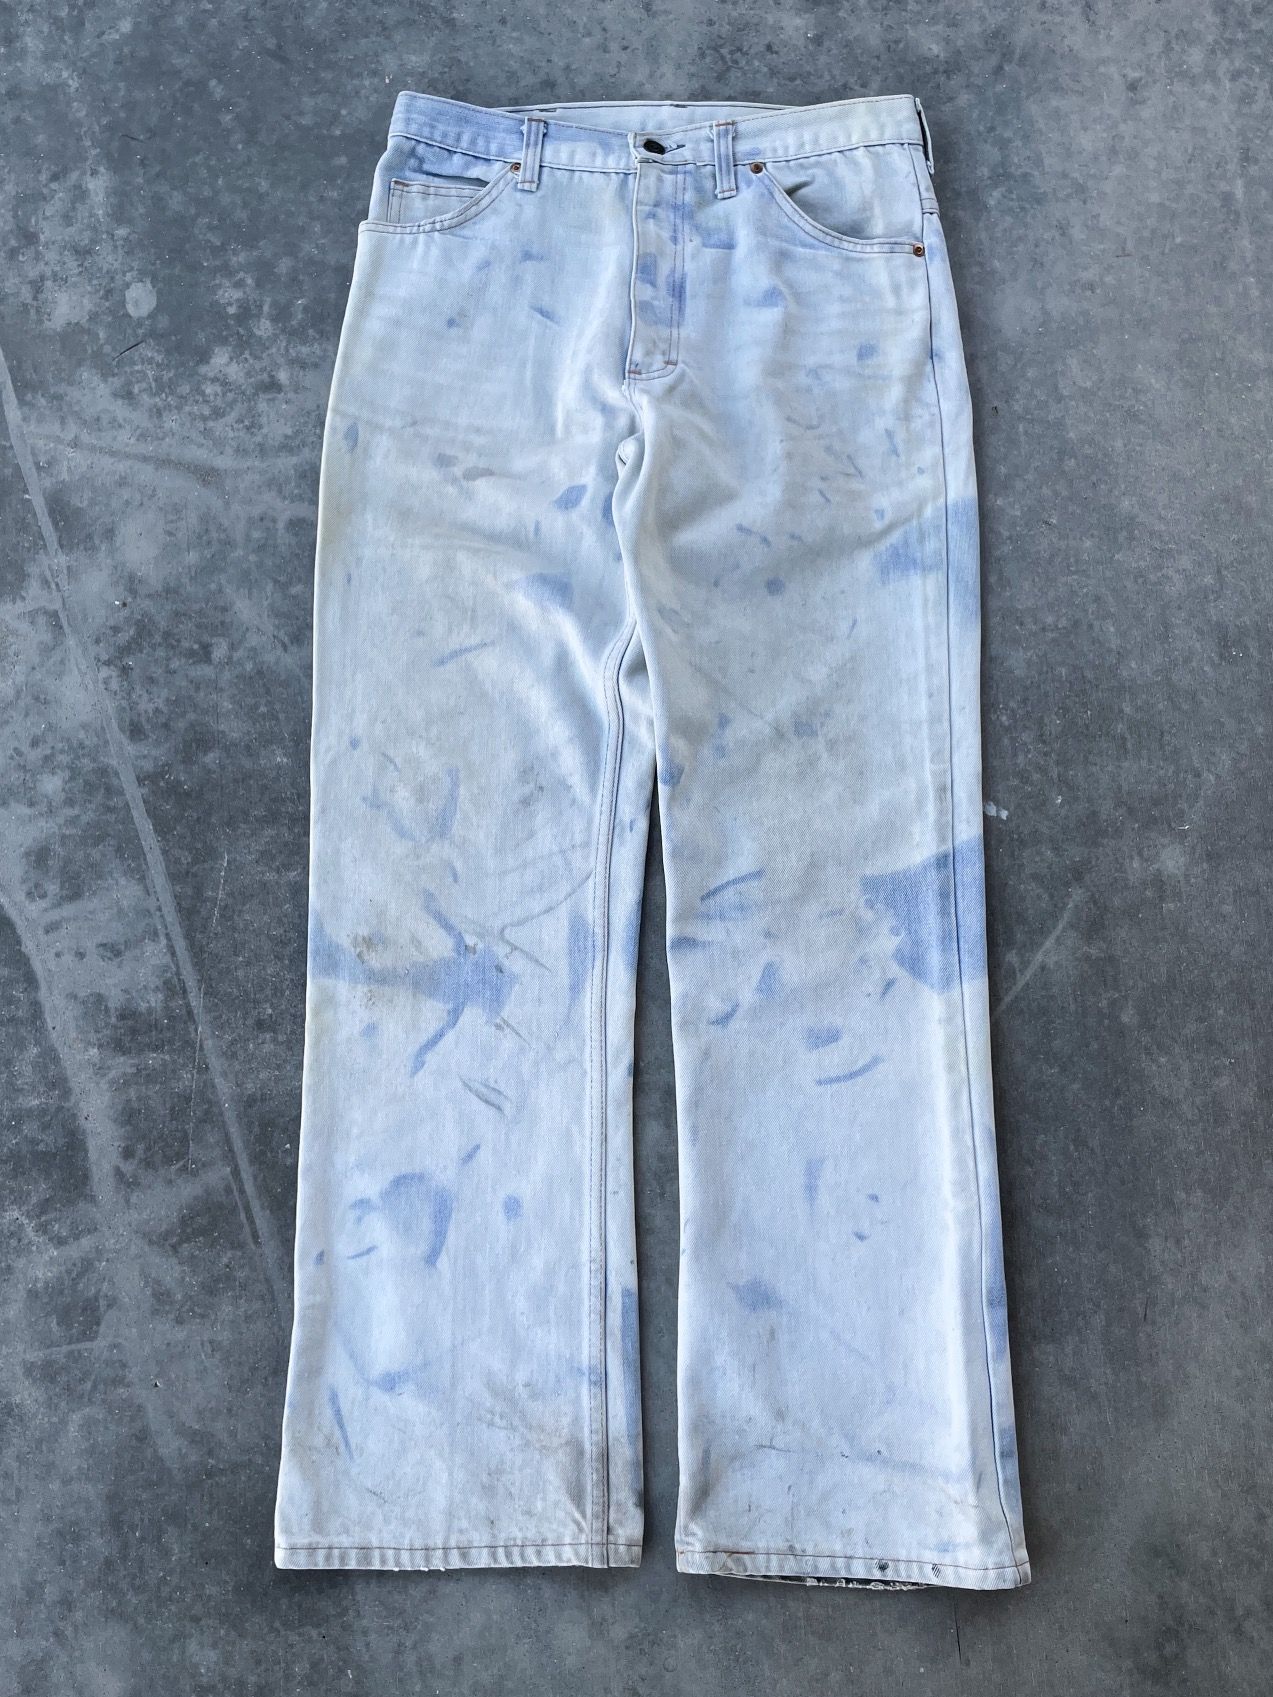 Vintage Vintage 70’s Sun Bleached Denim Jeans Size 32 Size US 32 / EU 48 - 1 Preview